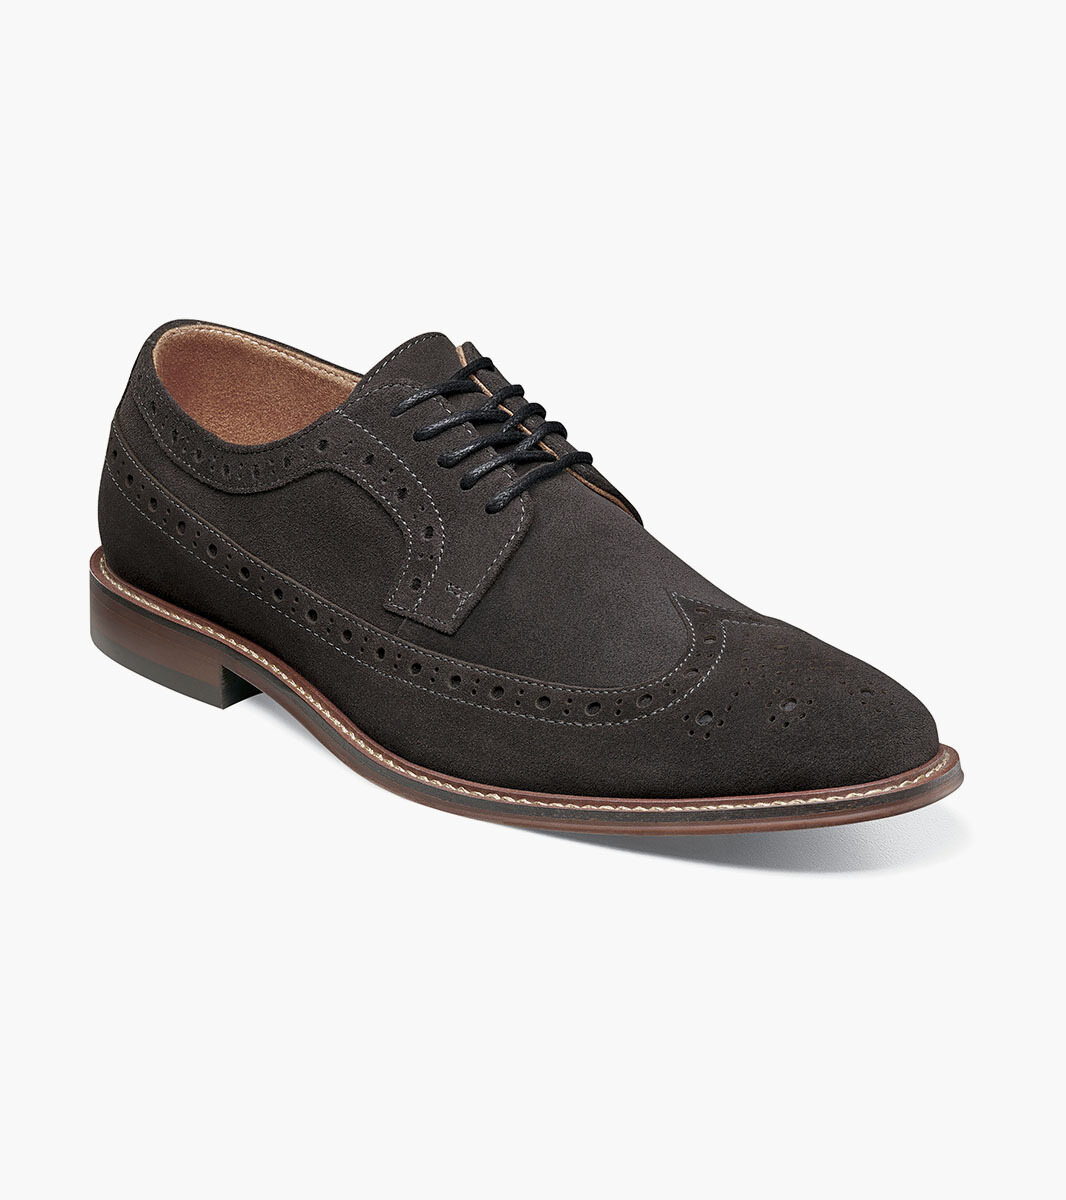 Marligan Wingtip Oxford Men's Casual Shoes | Stacyadams.com